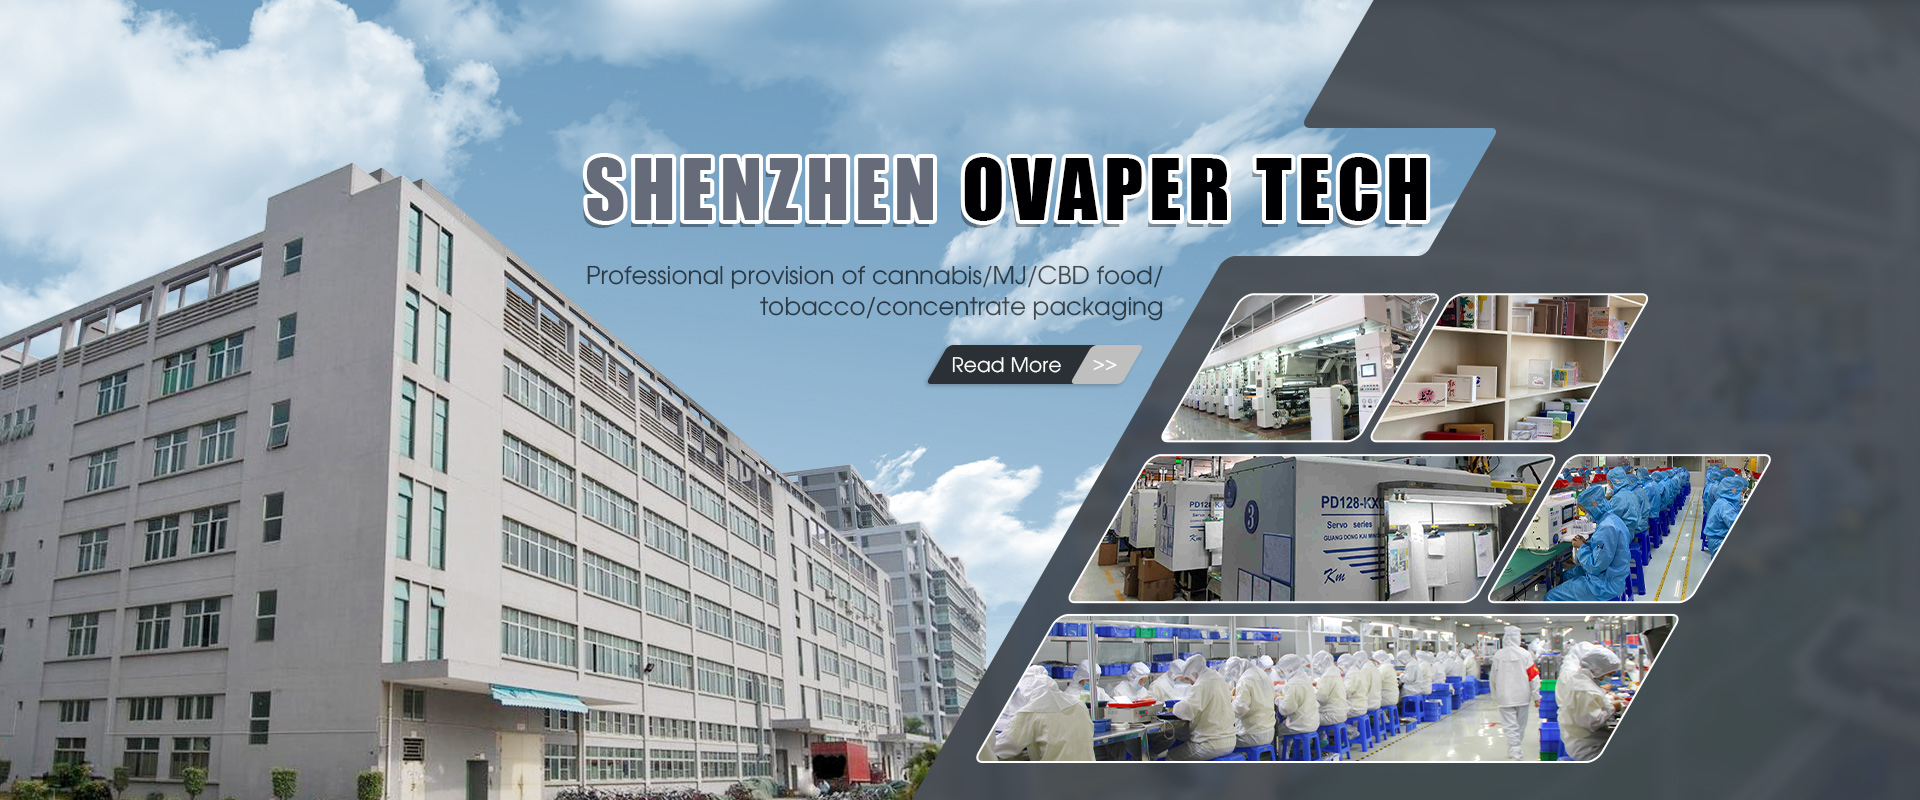 Giới thiệu về Ovaper Tech